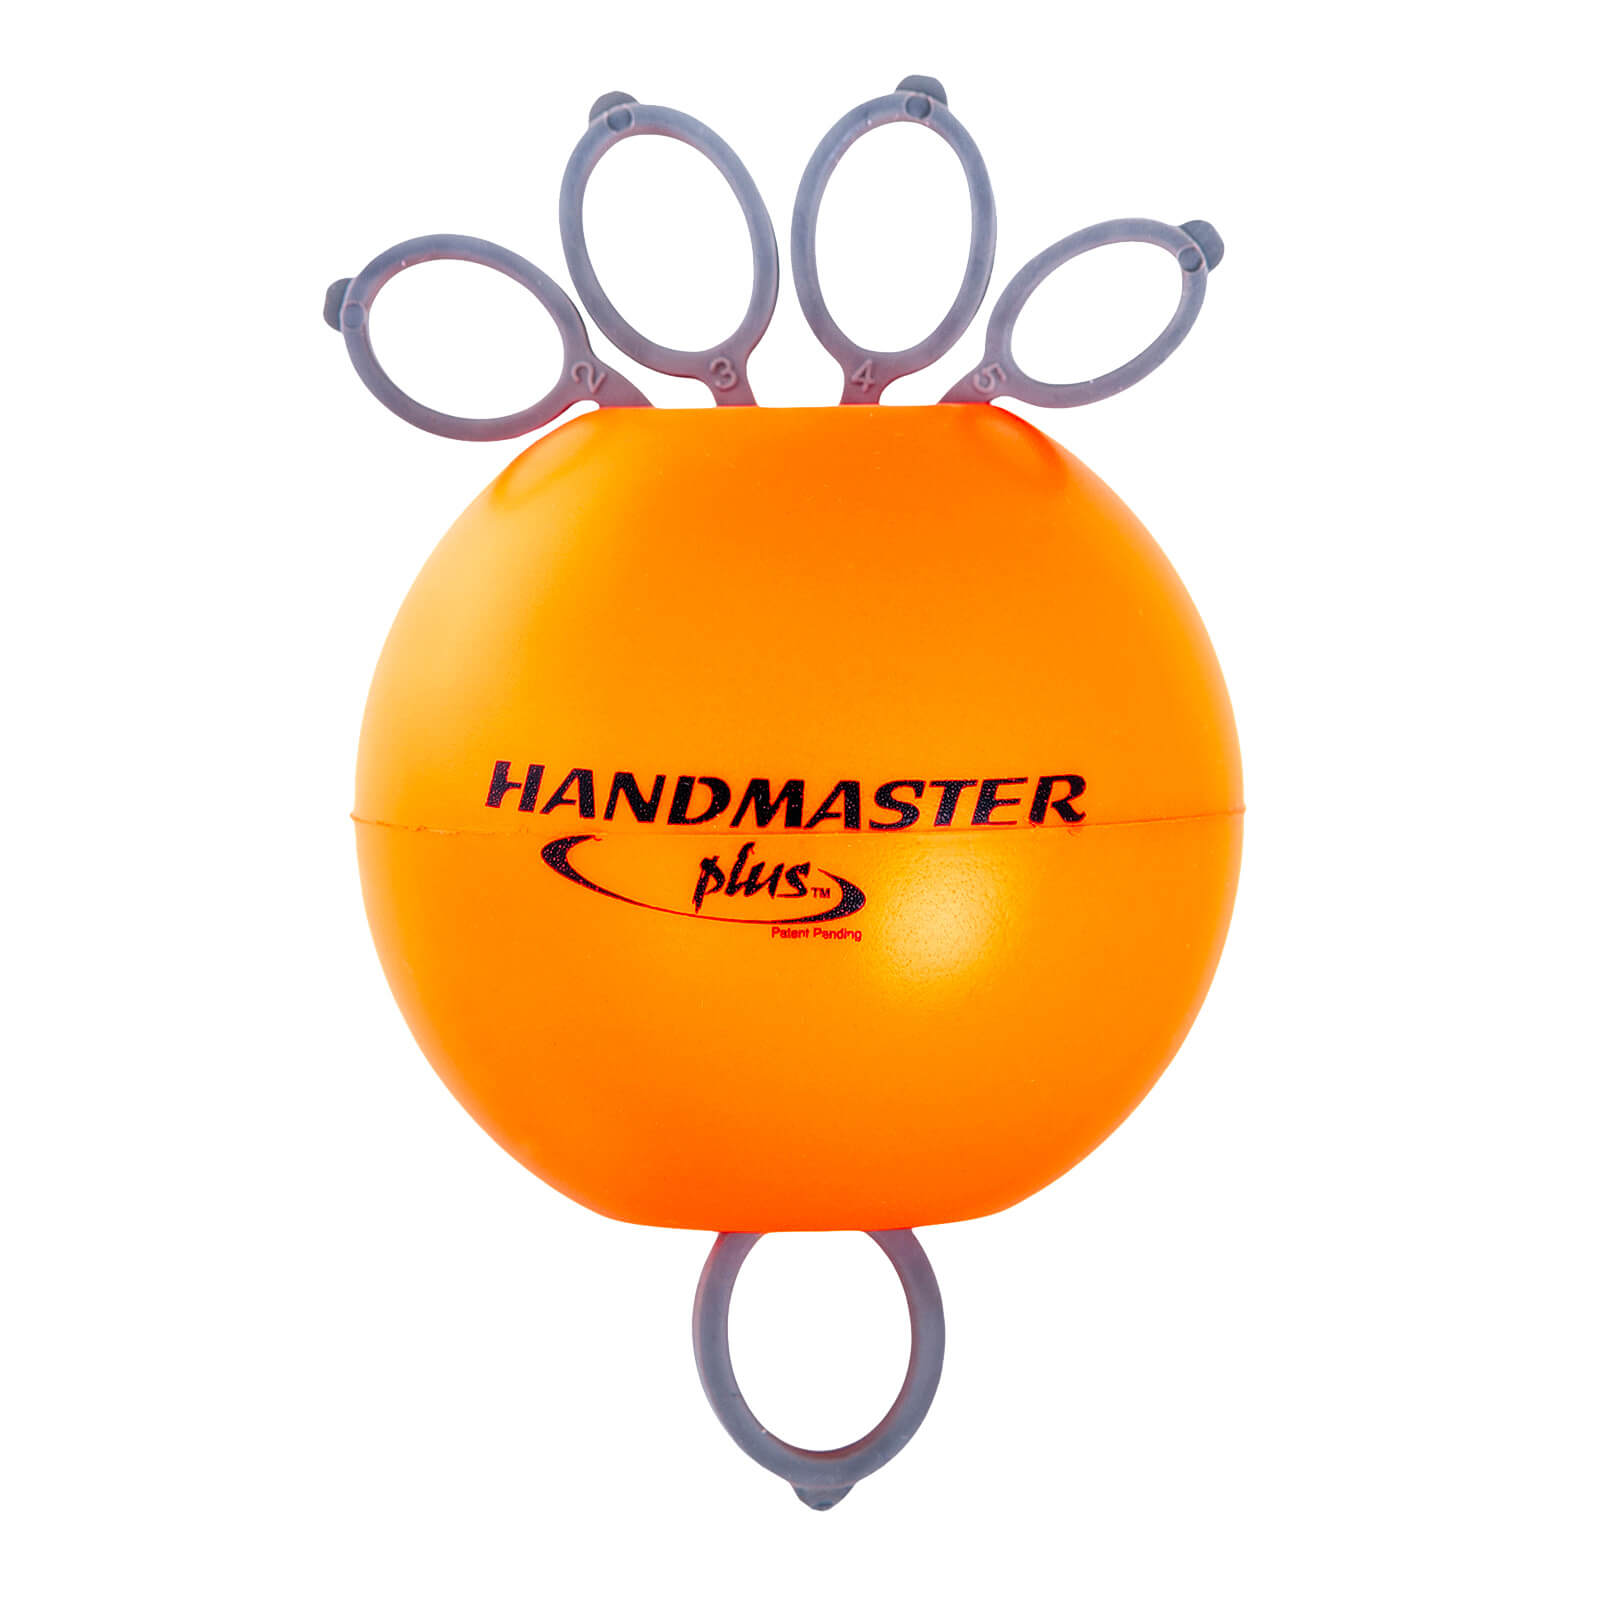 Handmaster Plus, la balle qui renforce les muscles de la main et du poignet